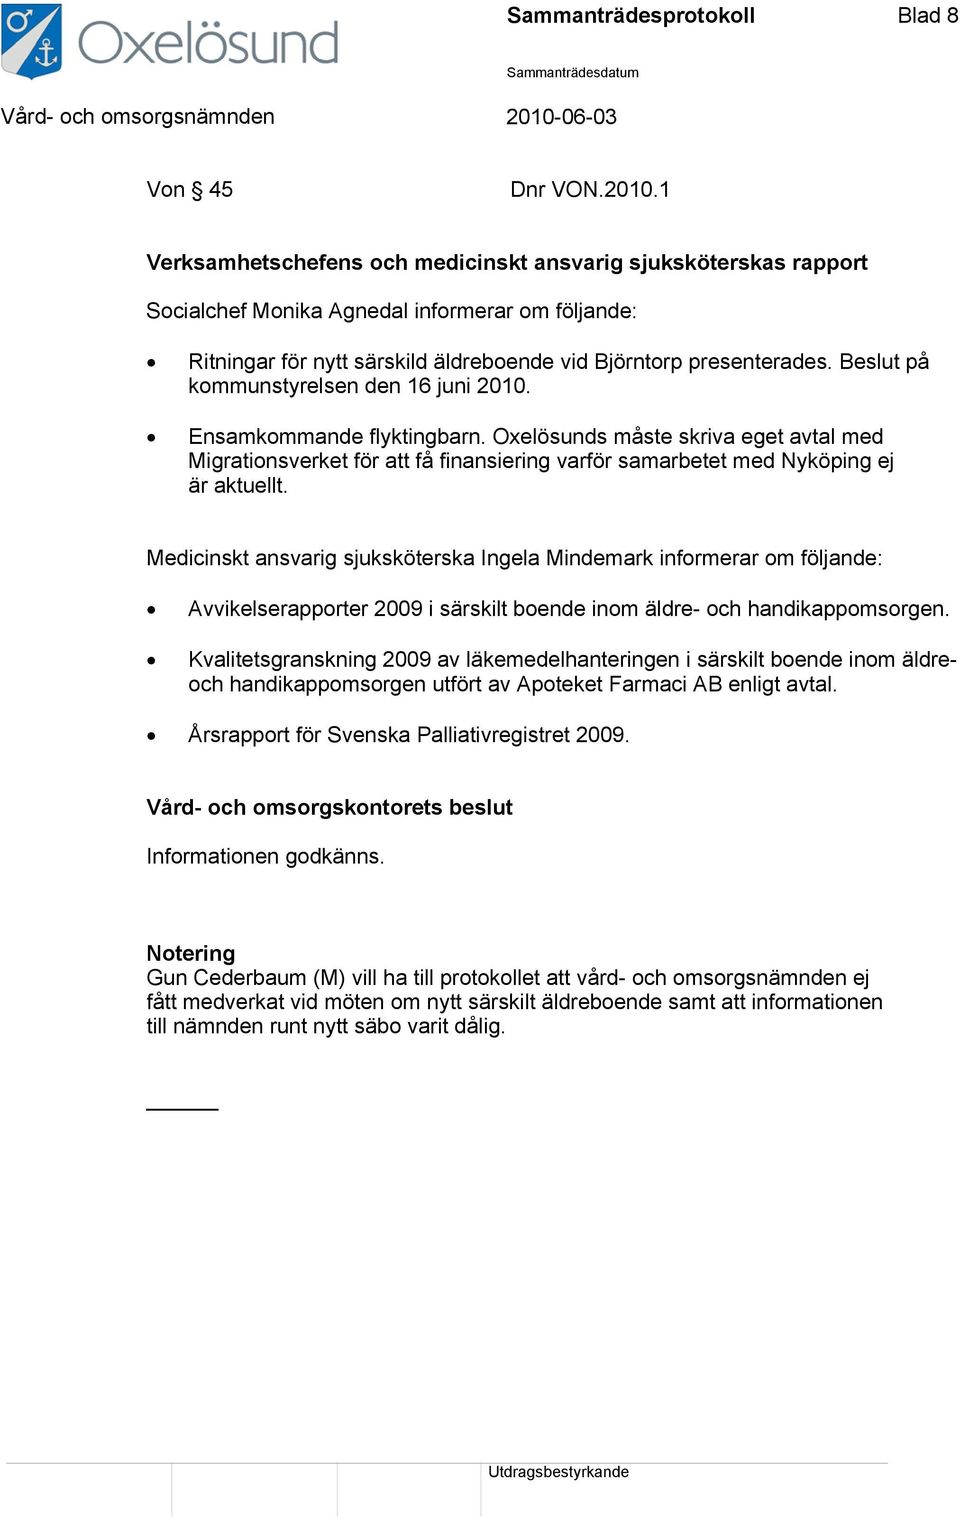 Beslut på kommunstyrelsen den 16 juni 2010. Ensamkommande flyktingbarn. Oxelösunds måste skriva eget avtal med Migrationsverket för att få finansiering varför samarbetet med Nyköping ej är aktuellt.